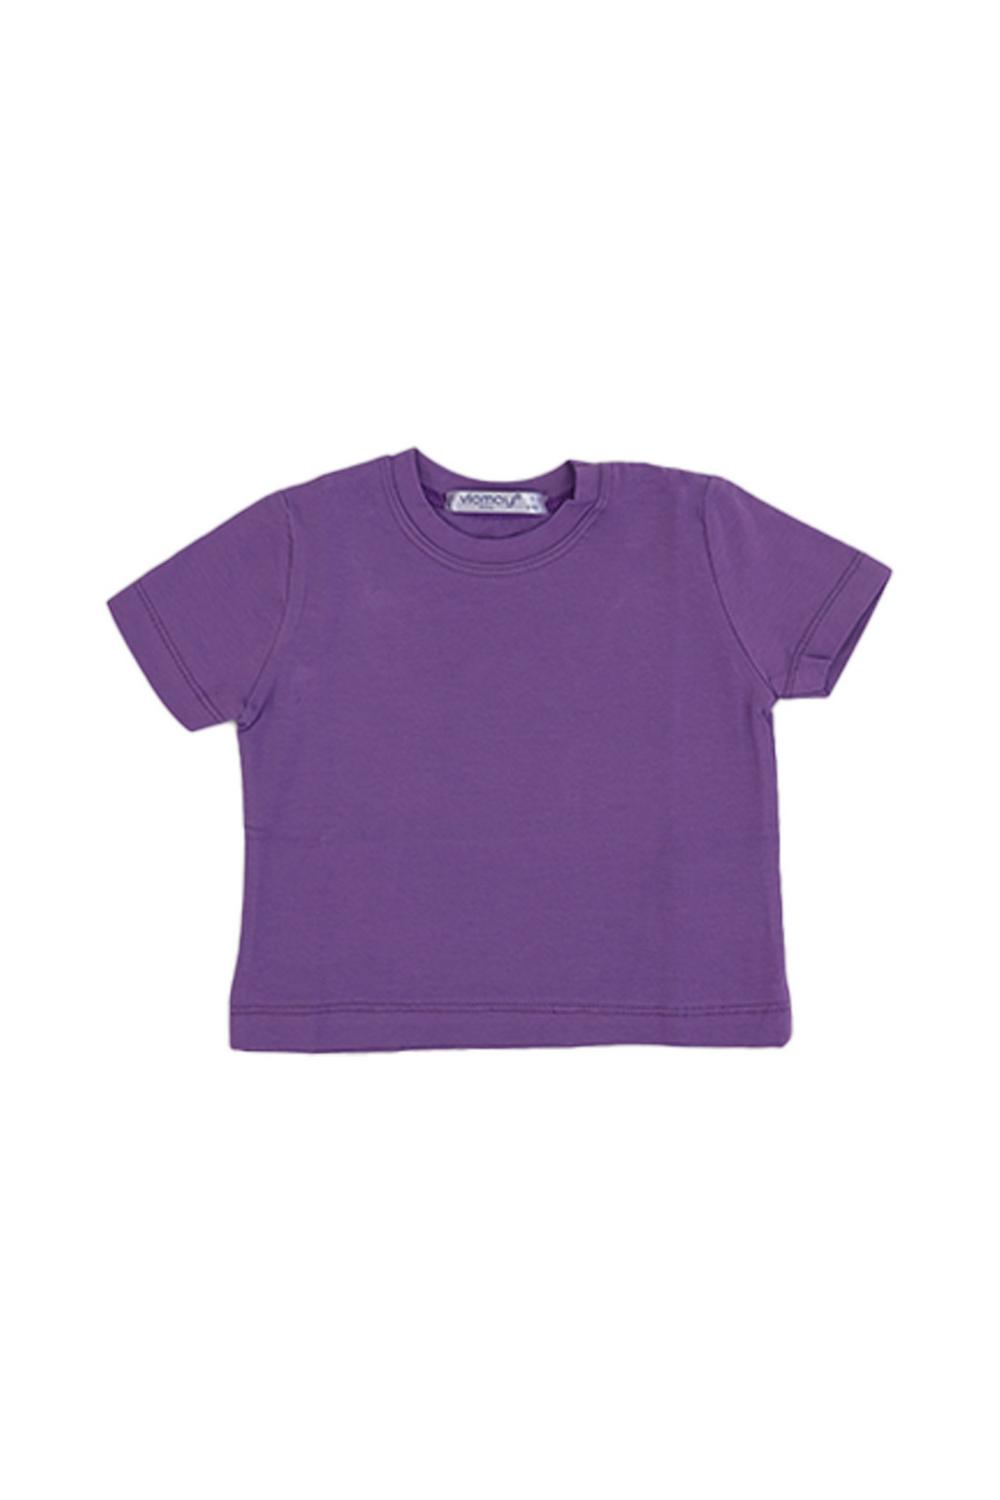 Plain T-Shirt / 1-4Y | 5-8Y | 9-12Y - Kids Fashion Turkey